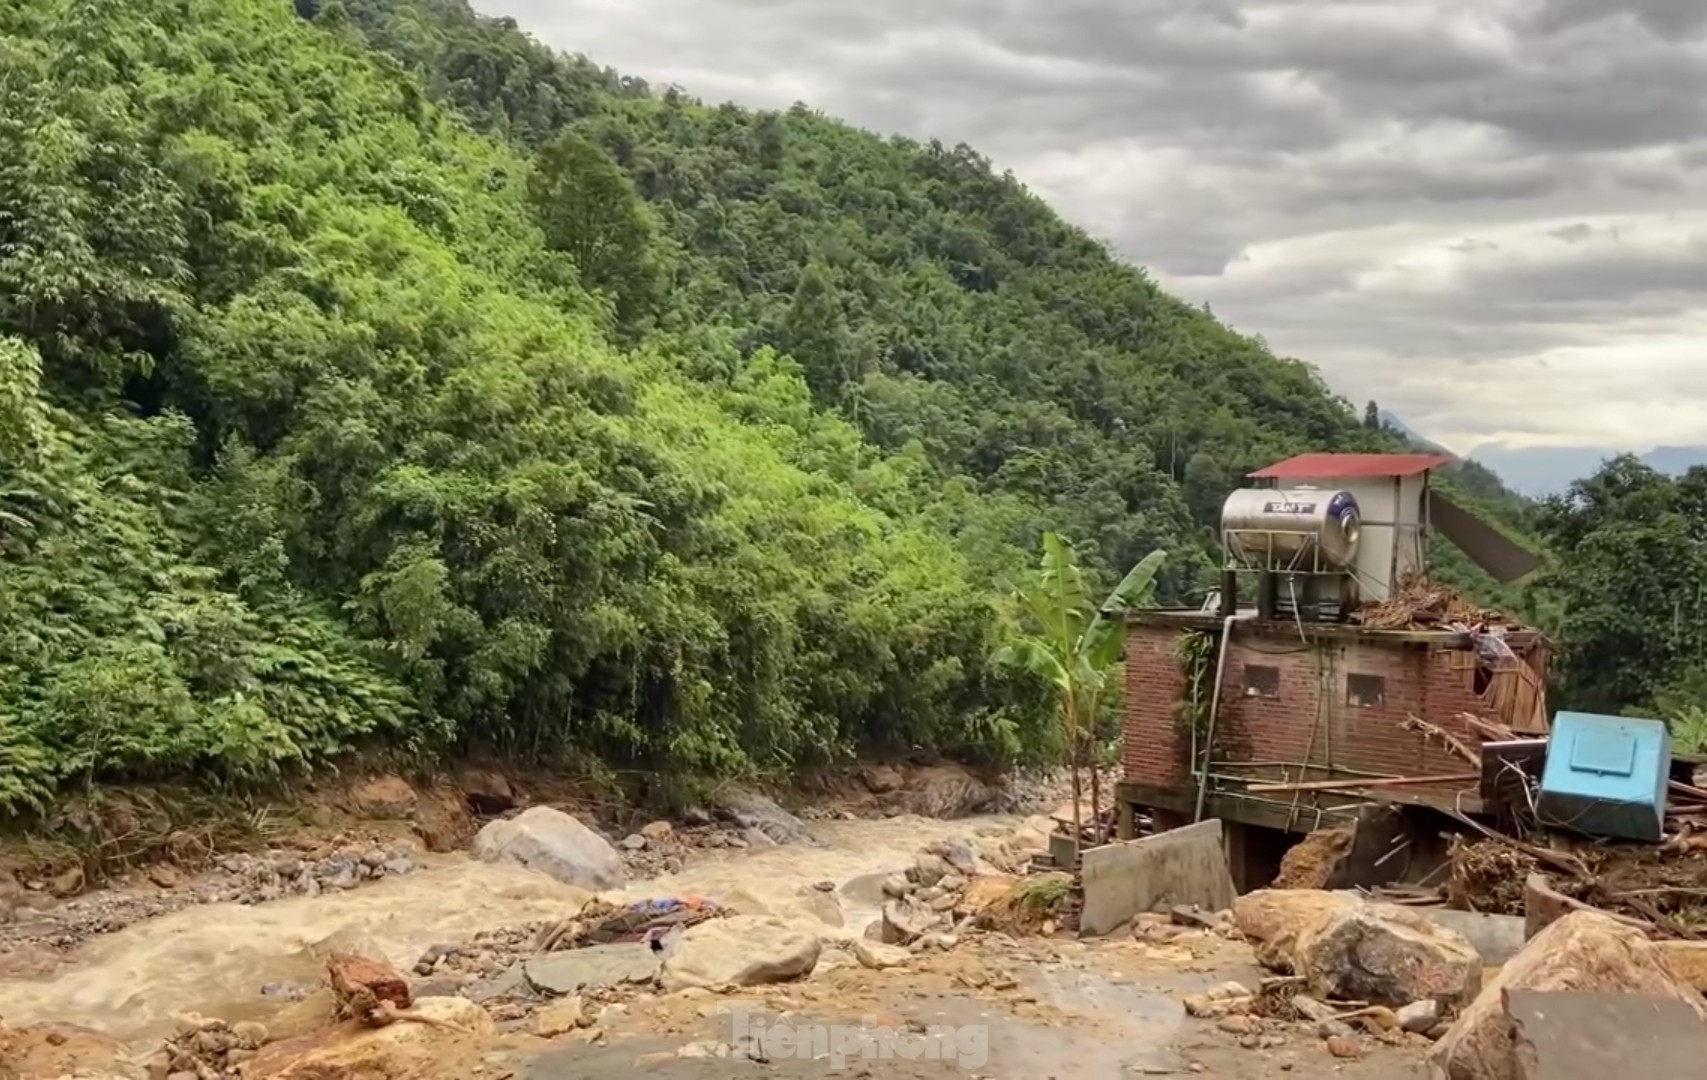 Cảnh hoang tàn nơi lũ quét vừa đi qua ở Lào Cai ảnh 8